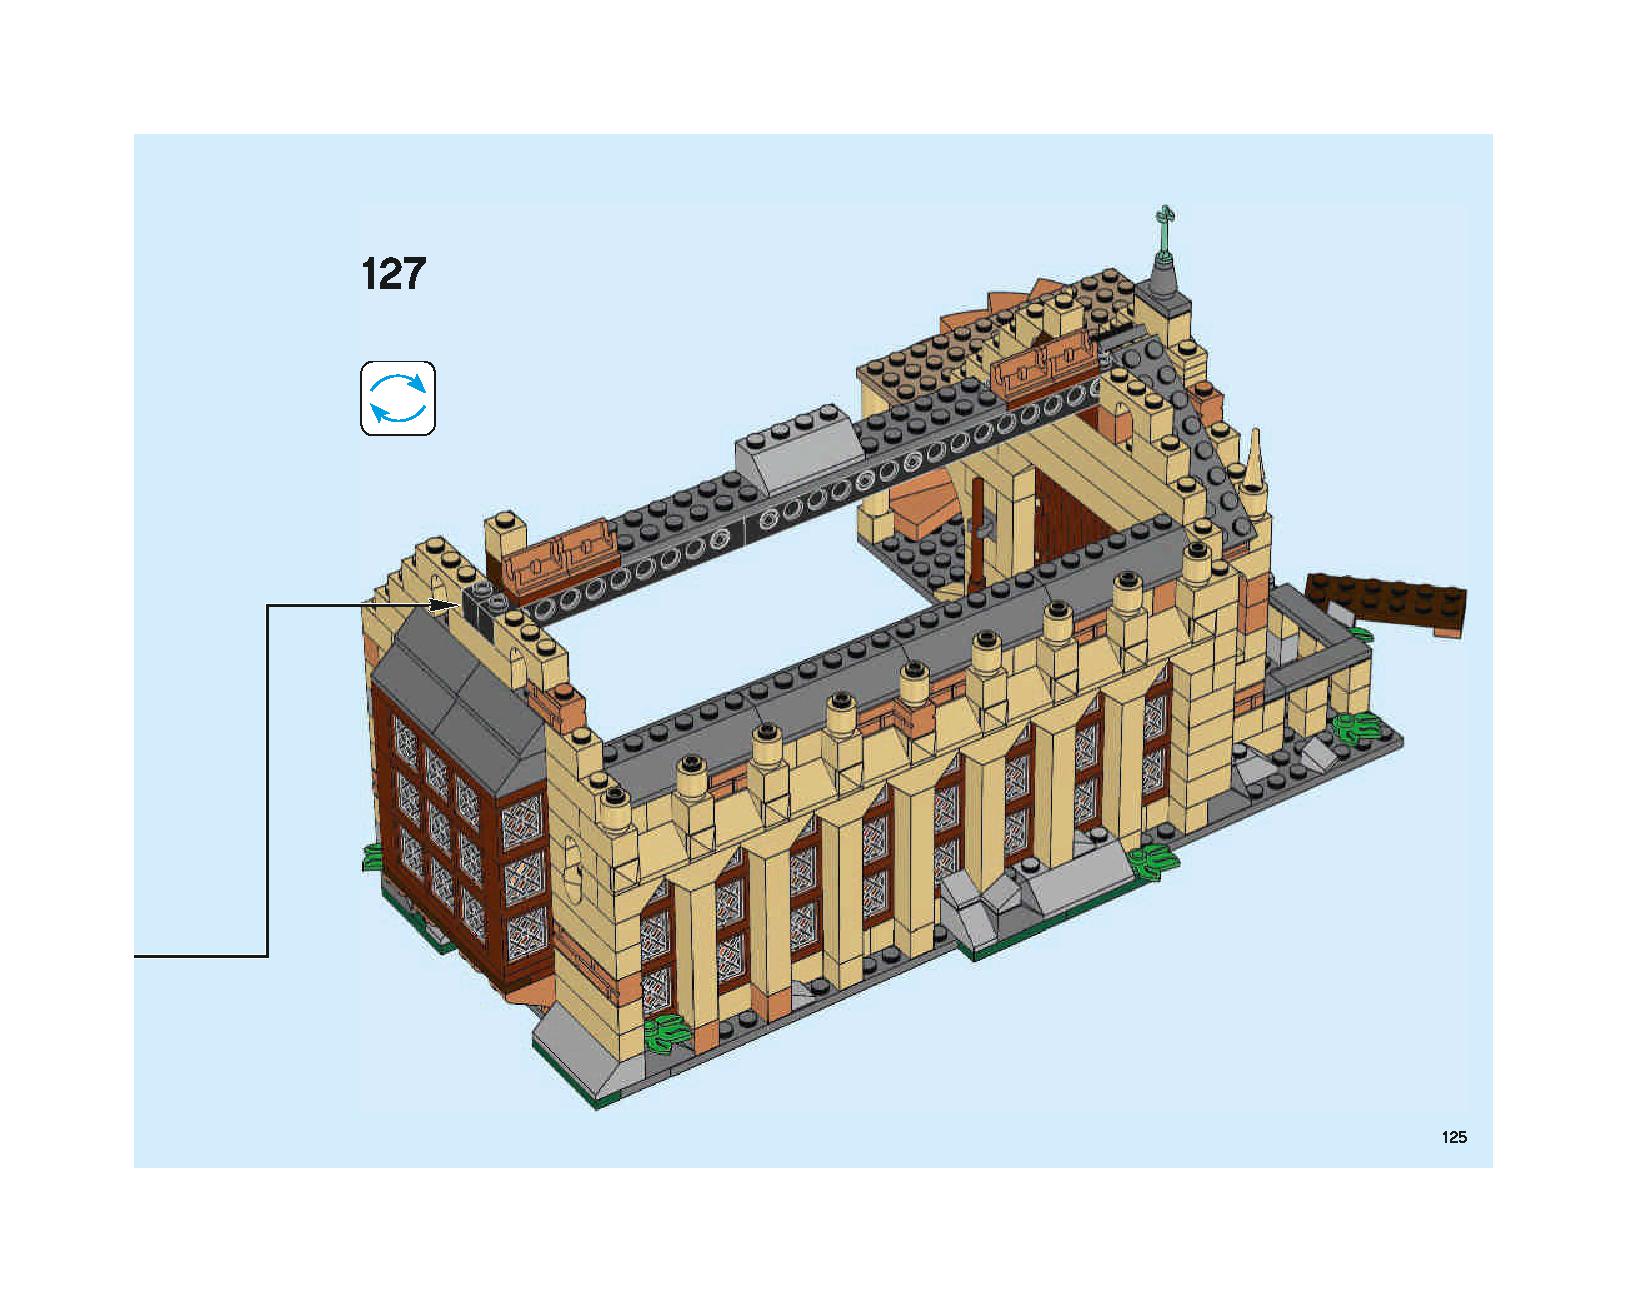 ホグワーツの大広間 75954 レゴの商品情報 レゴの説明書・組立方法 125 page